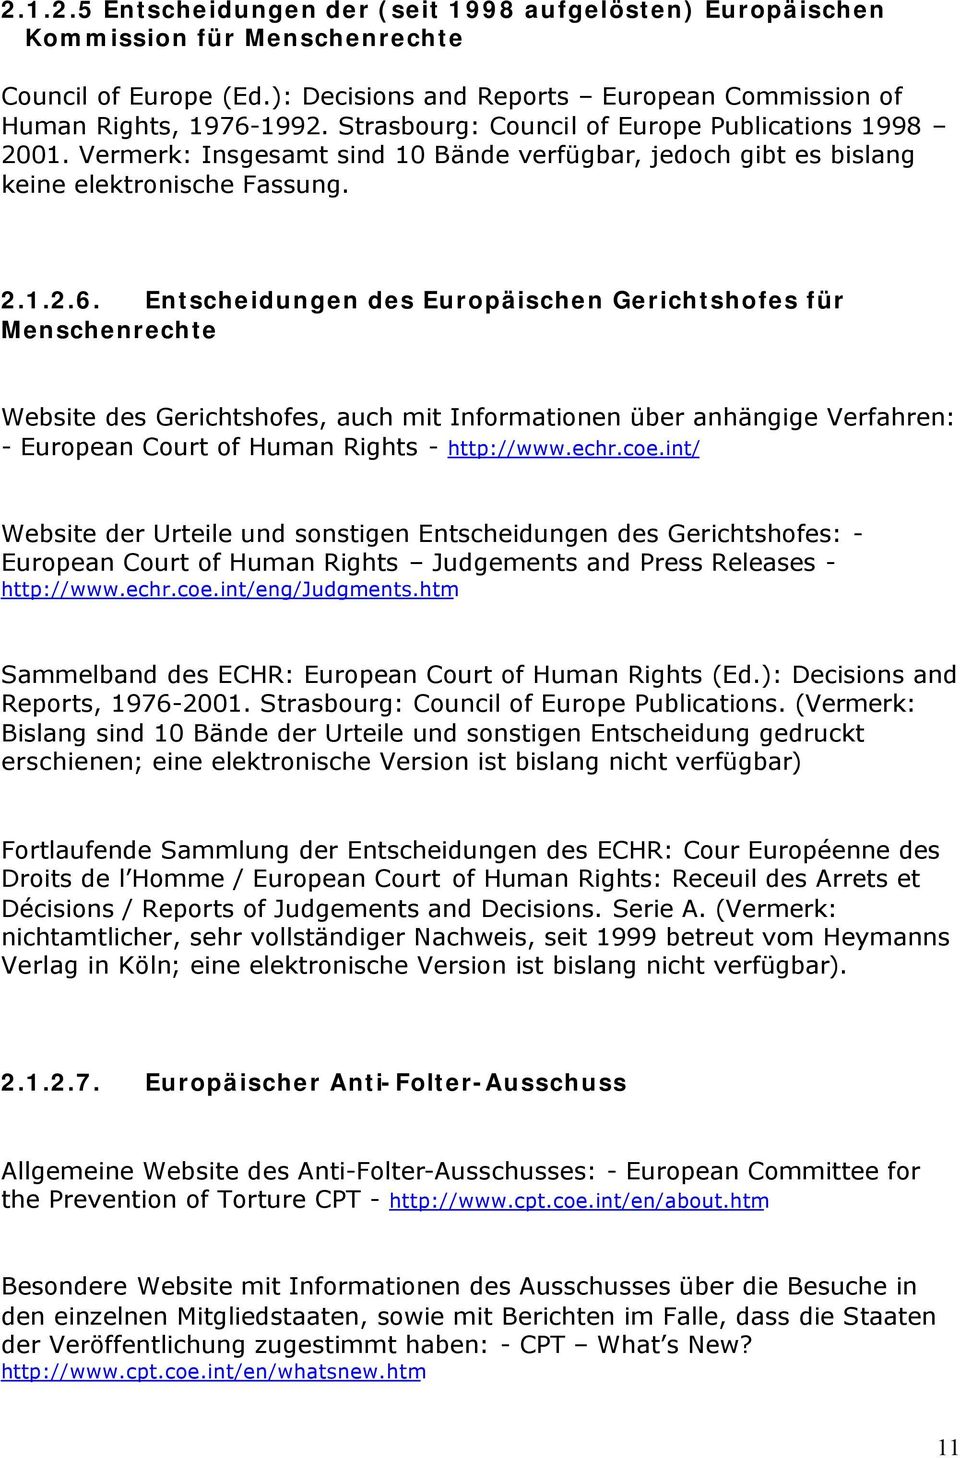 Entscheidungen des Europäischen Gerichtshofes für Menschenrechte Website des Gerichtshofes, auch mit Informationen über anhängige Verfahren: - European Court of Human Rights - http://www.echr.coe.